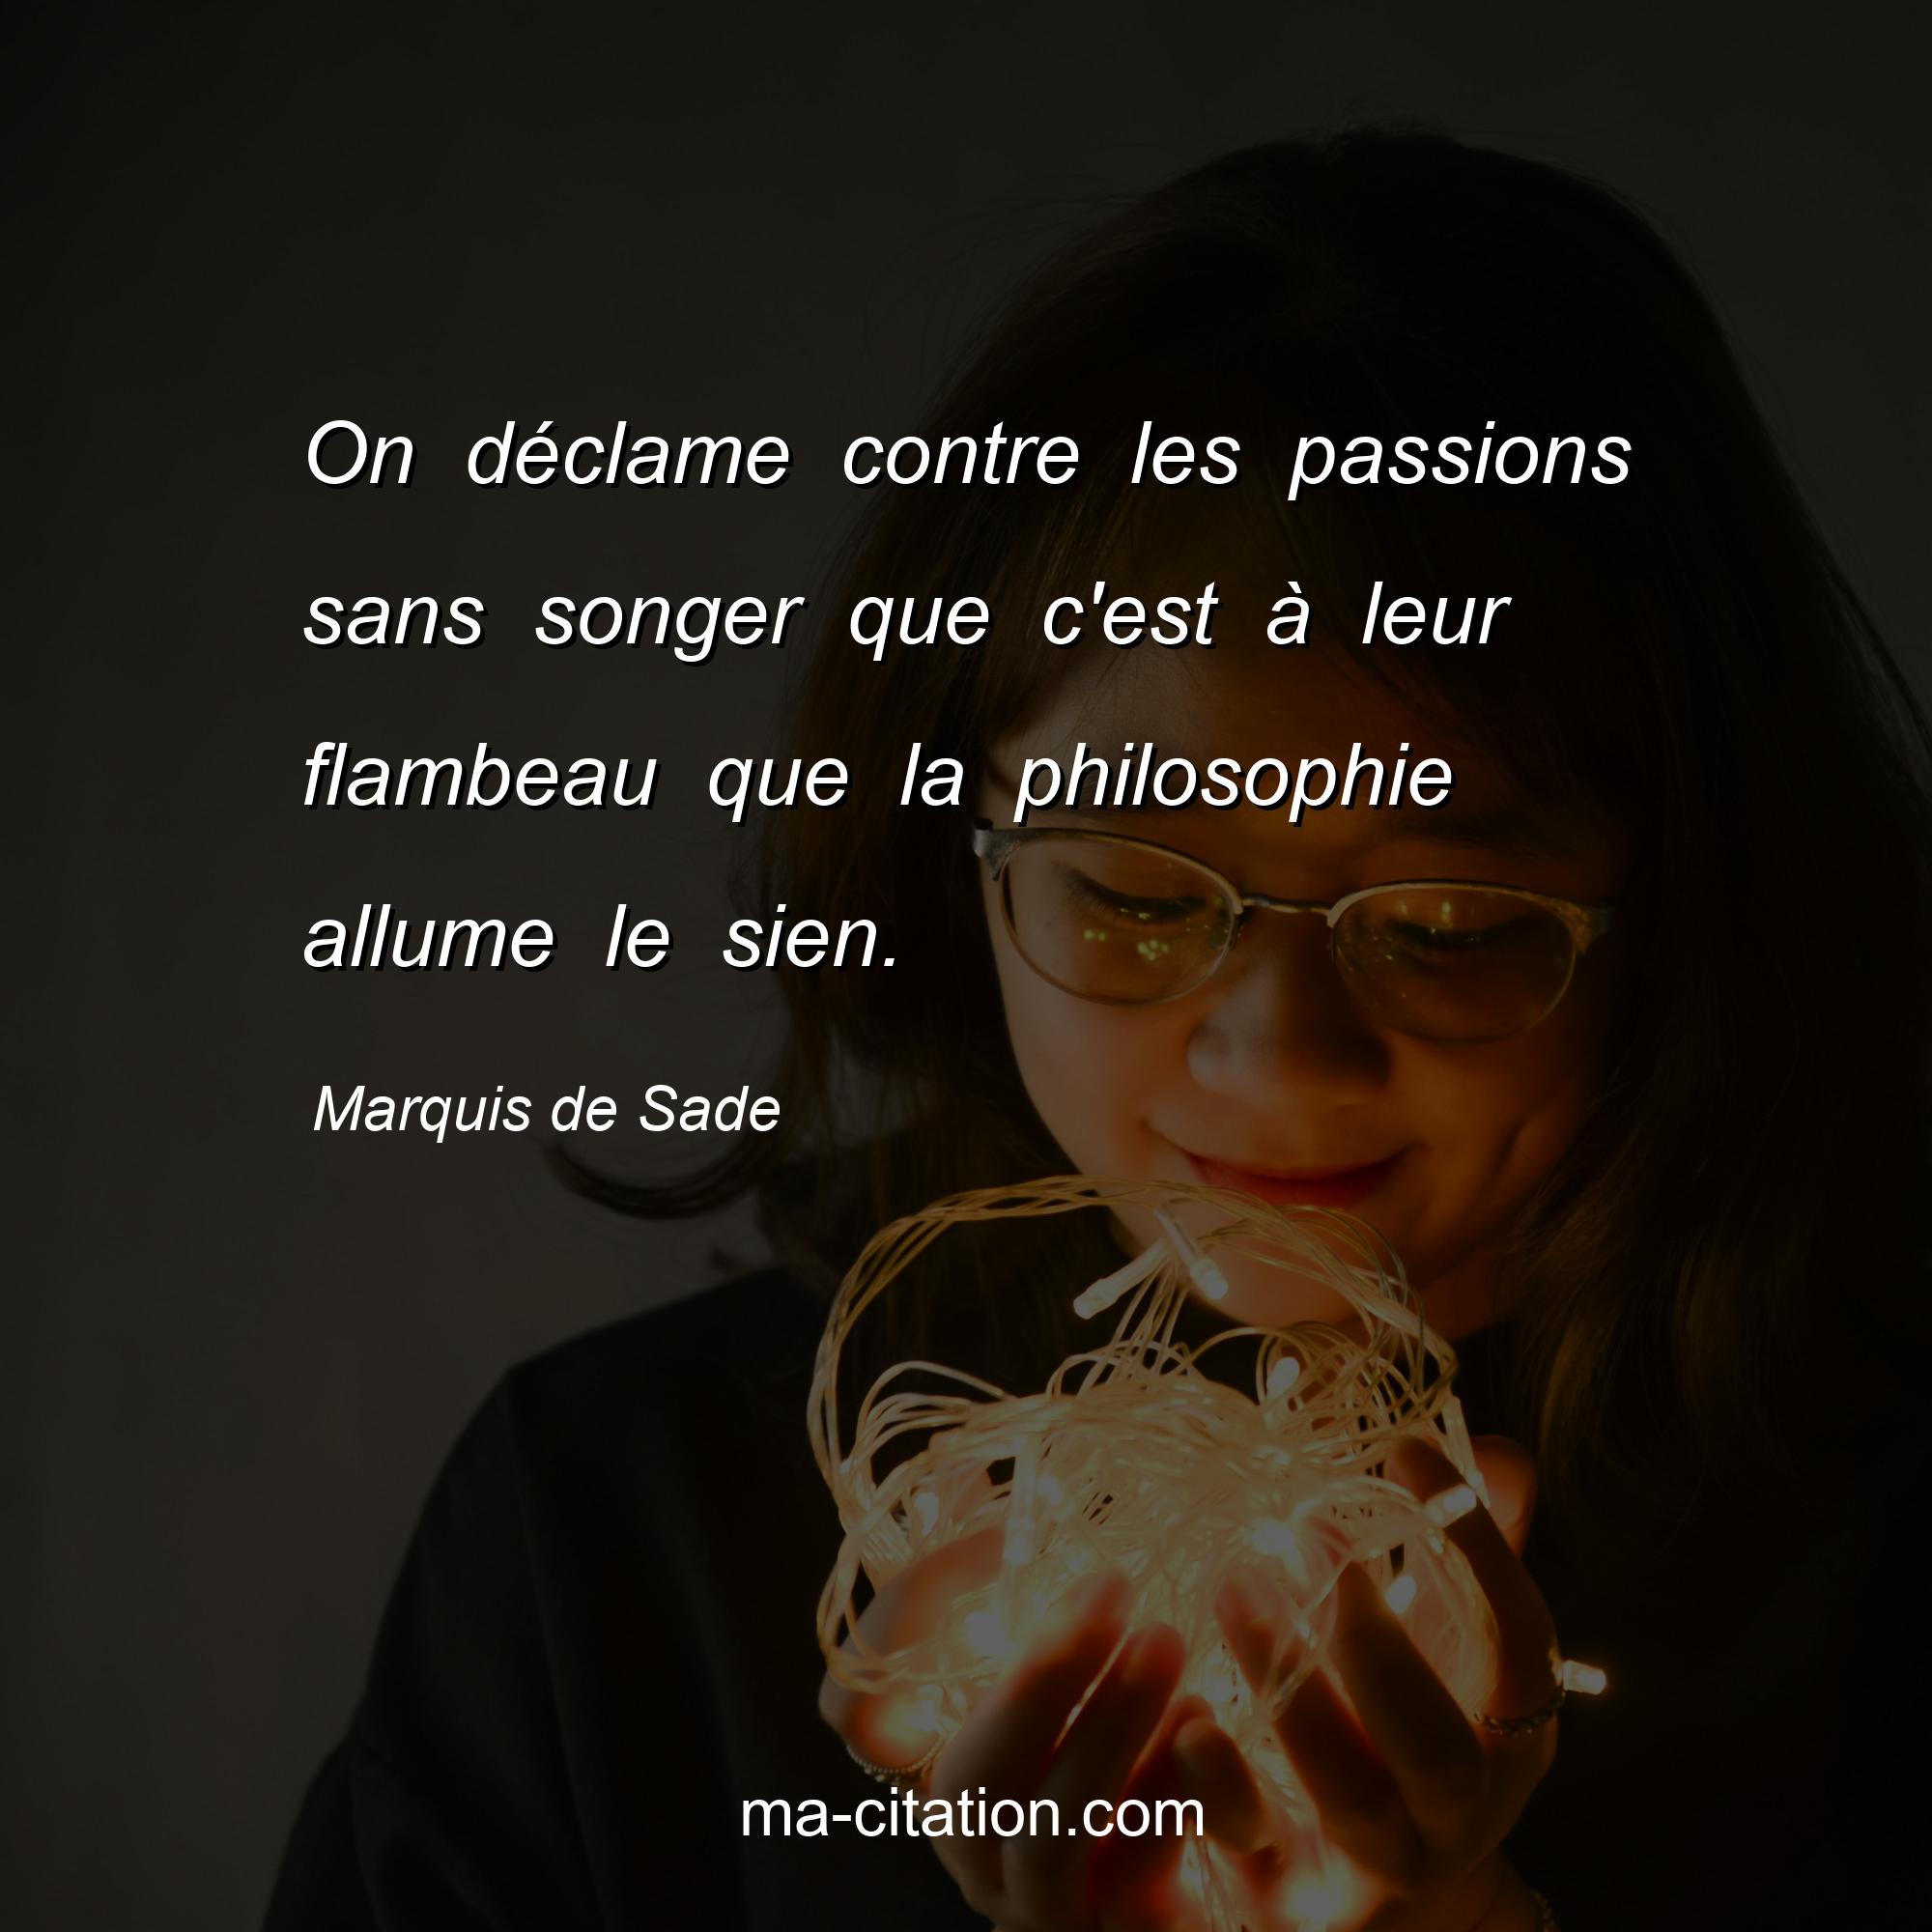 Marquis de Sade : On déclame contre les passions sans songer que c'est à leur flambeau que la philosophie allume le sien.